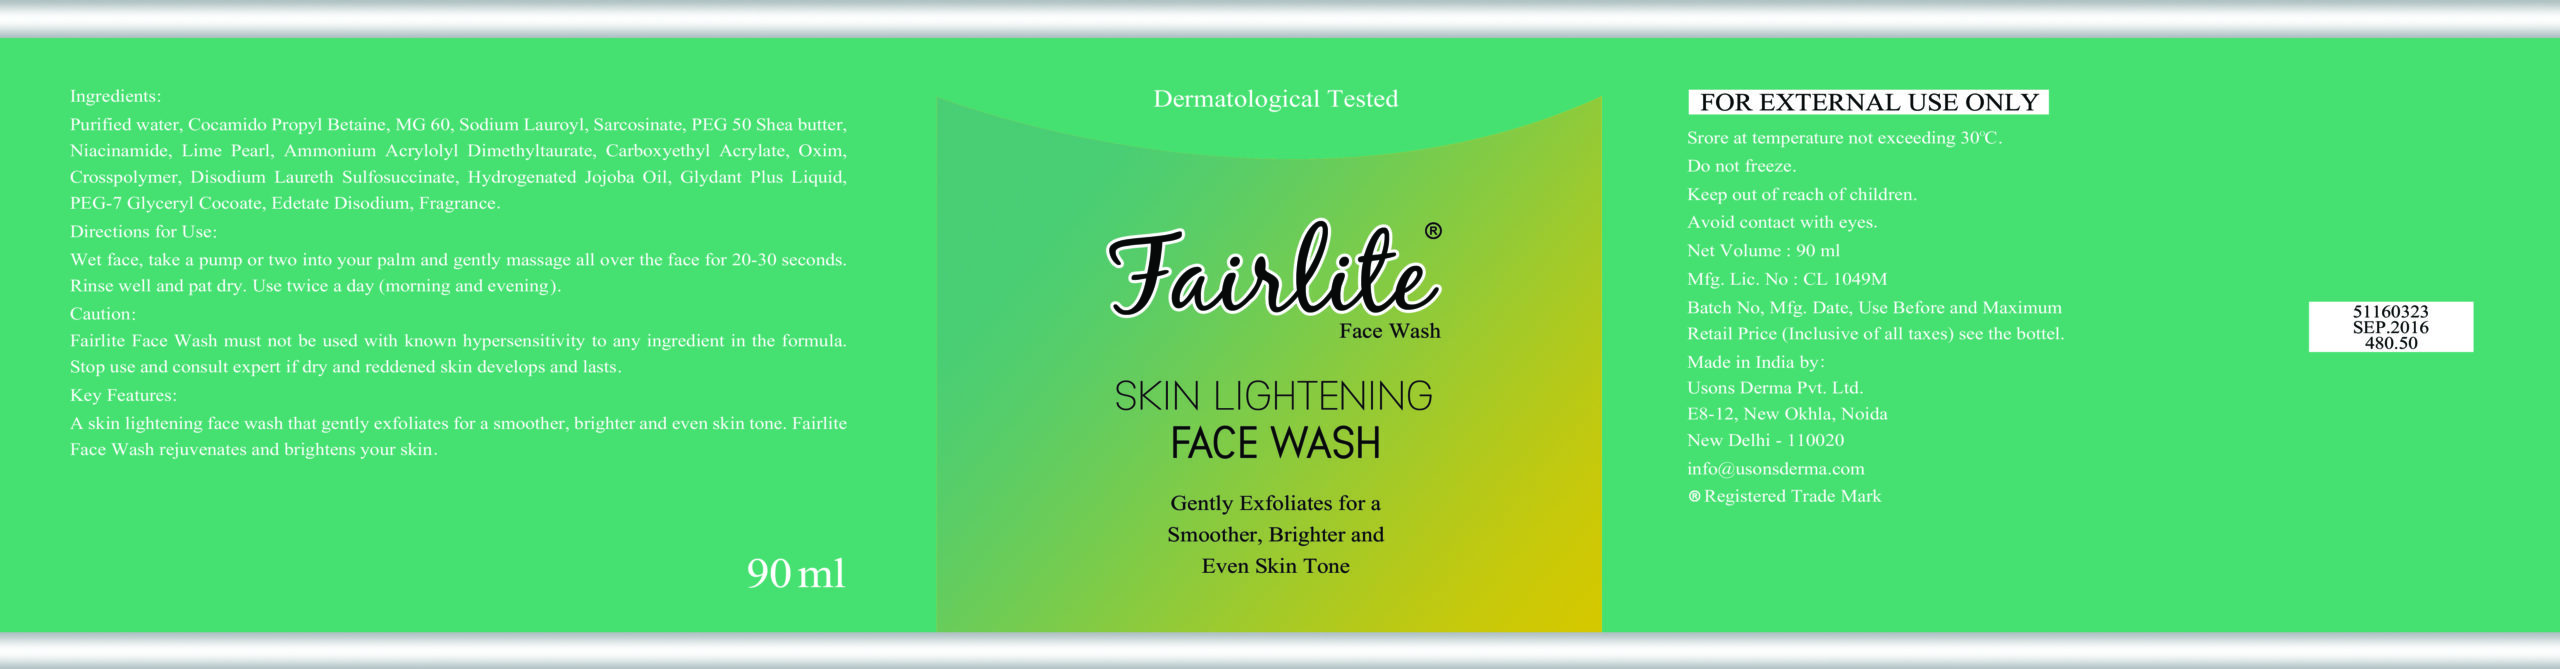 Fairlite Face Wash